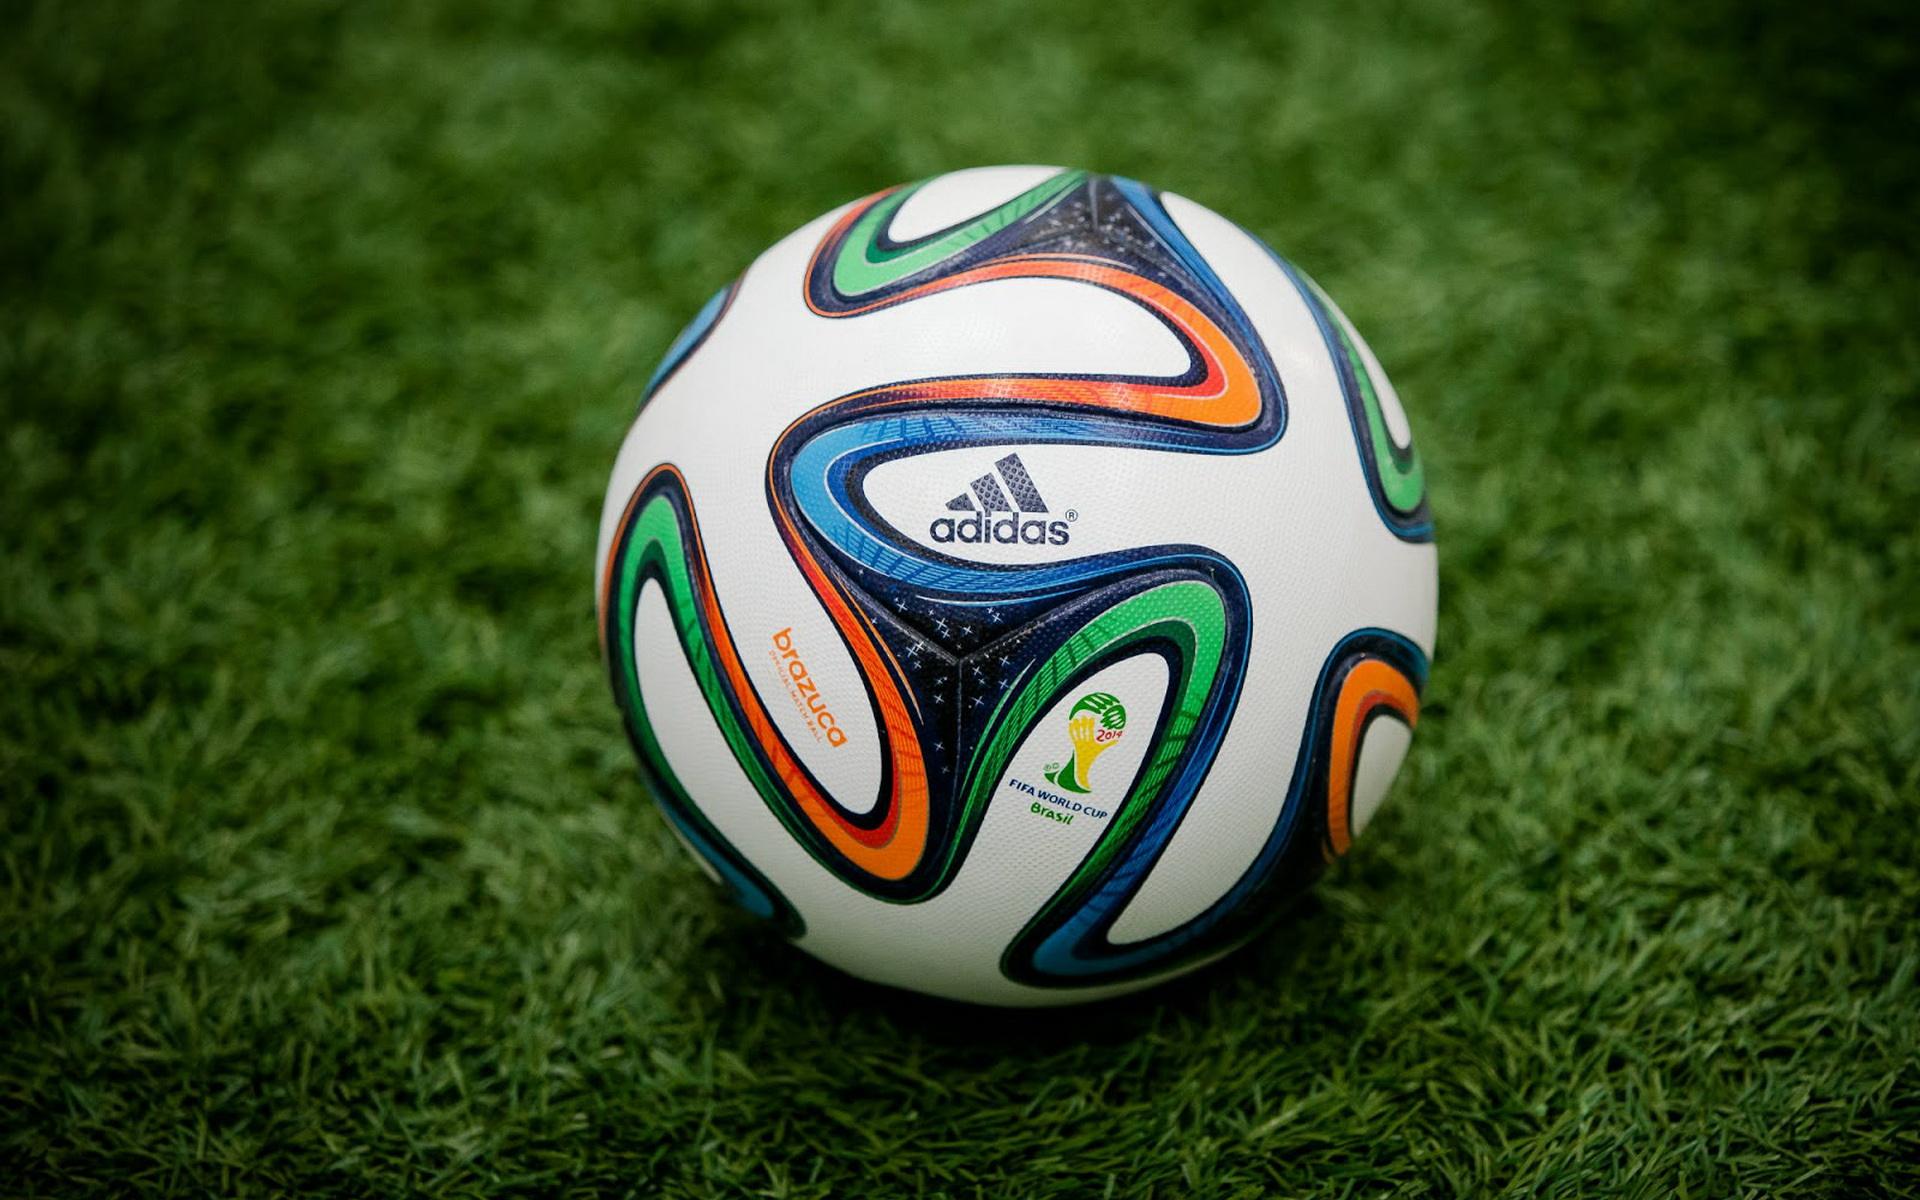 2014世界杯 2014世界杯男子足球乌龙球第几分钟